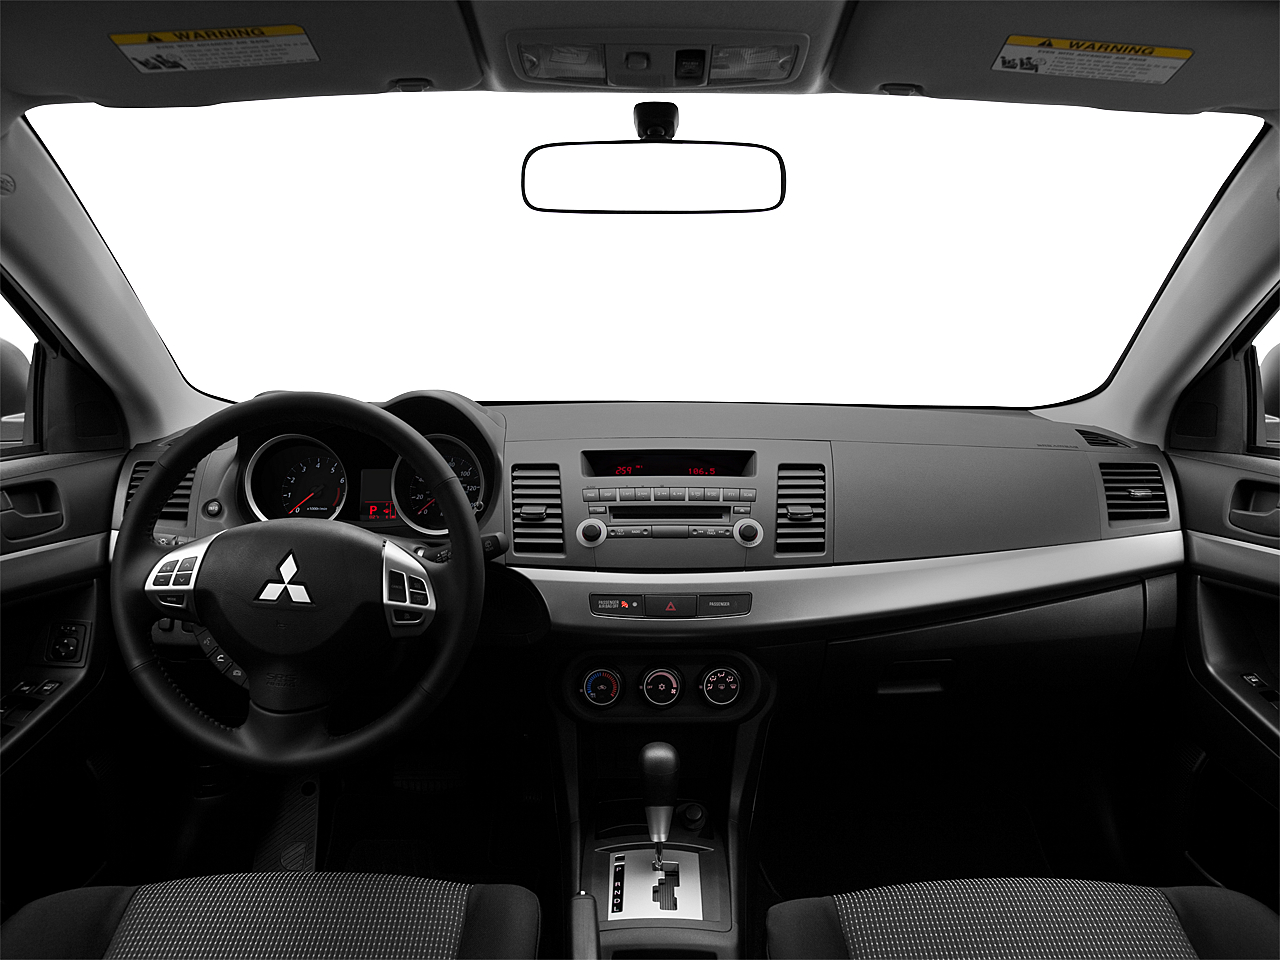 2011 Mitsubishi Lancer Sportback ES 4dr Hatchback 5M - Research - GrooveCar